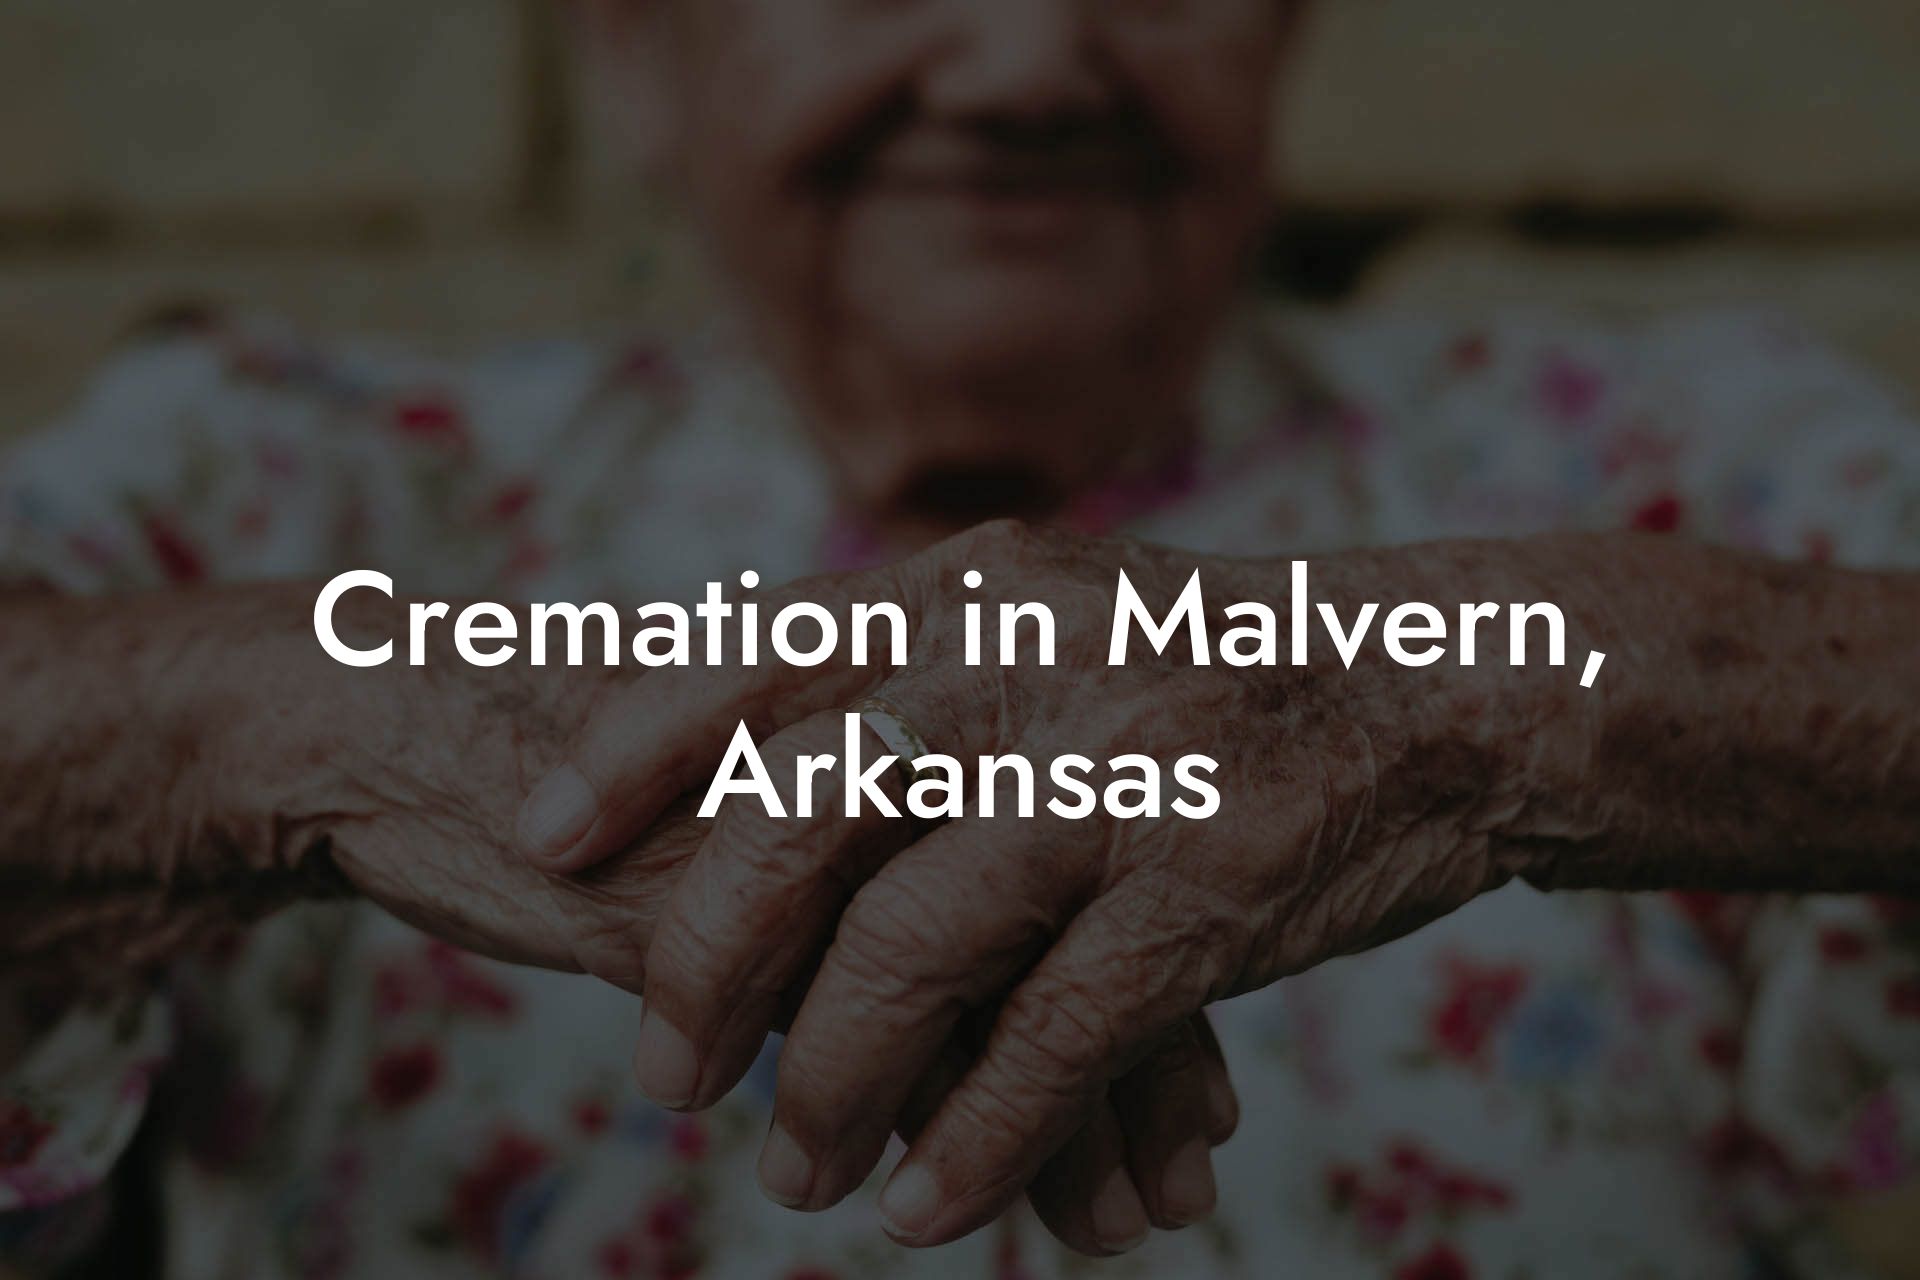 Cremation in Malvern, Arkansas